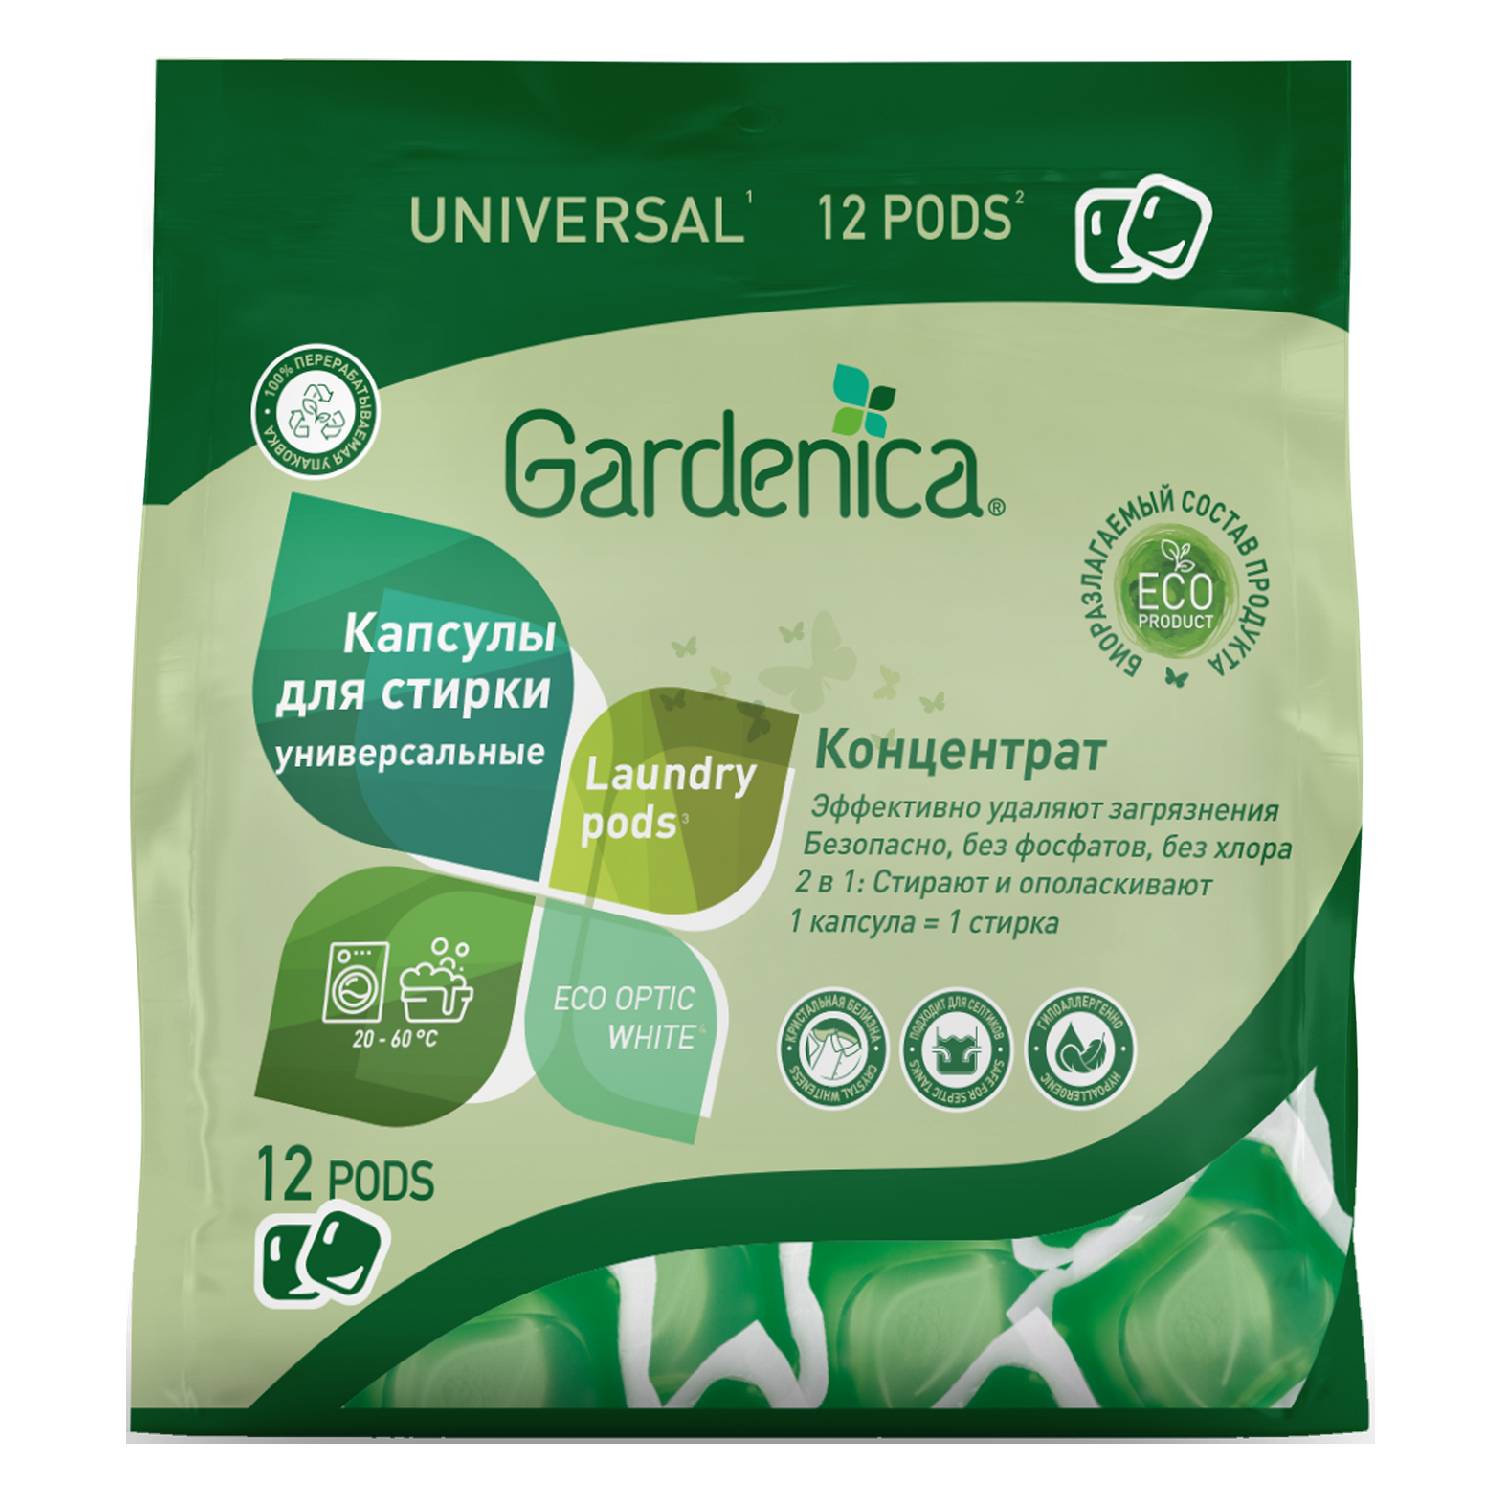 Gardenica Универсальные экологичные капсулы для стирки цветного и белого белья, 12 шт (Gardenica, Стирка) цена и фото